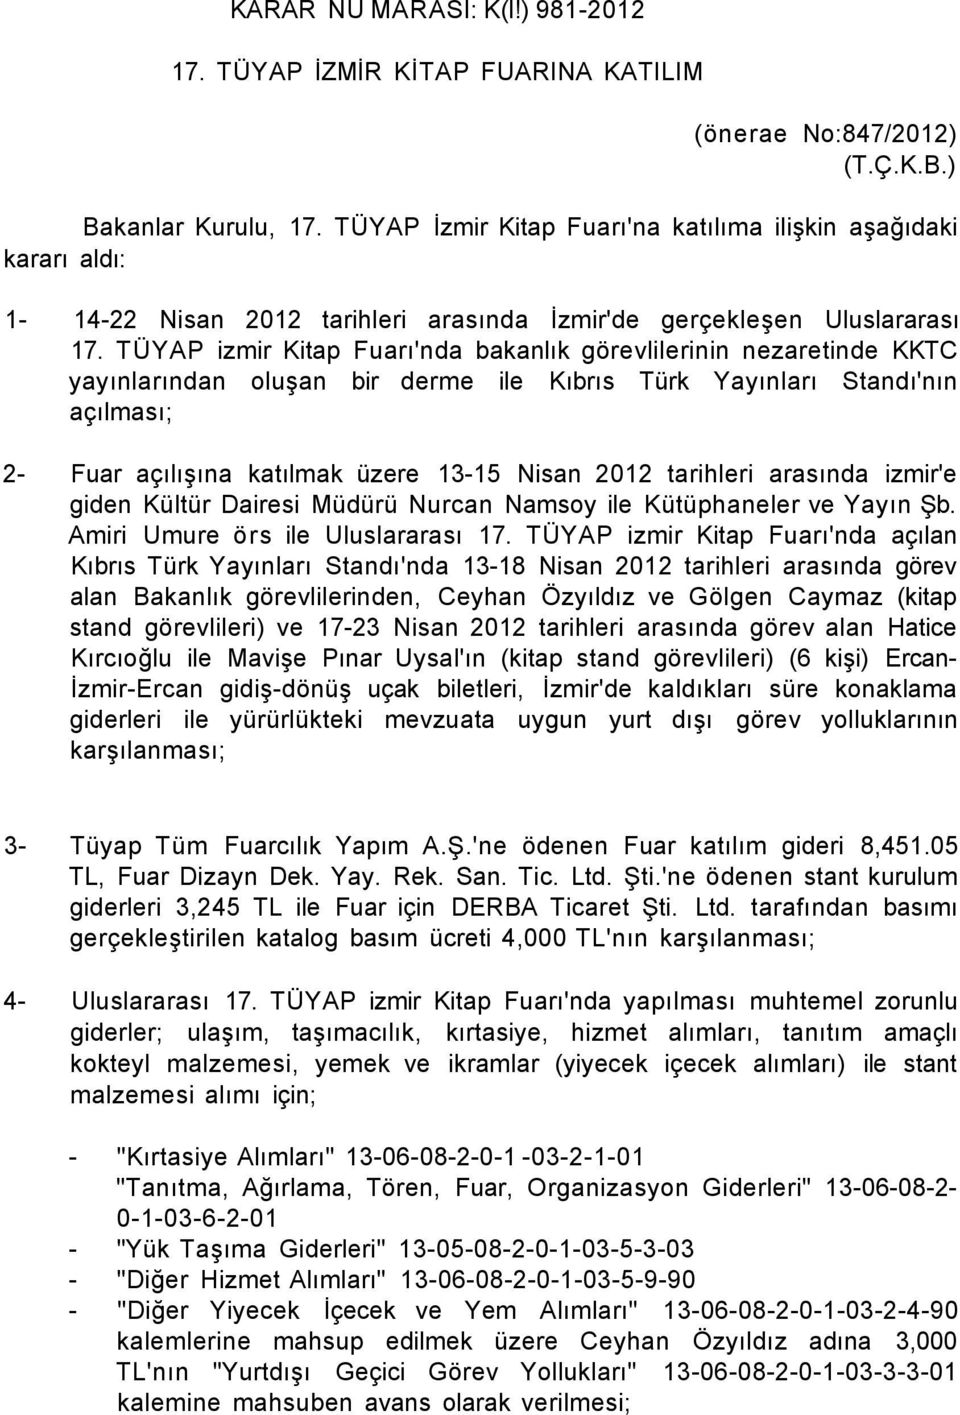 TÜYAP izmir Kitap Fuarı'nda bakanlık görevlilerinin nezaretinde KKTC yayınlarından oluşan bir derme ile Kıbrıs Türk Yayınları Standı'nın açılması; 2- Fuar açılışına katılmak üzere 13-15 Nisan 2012